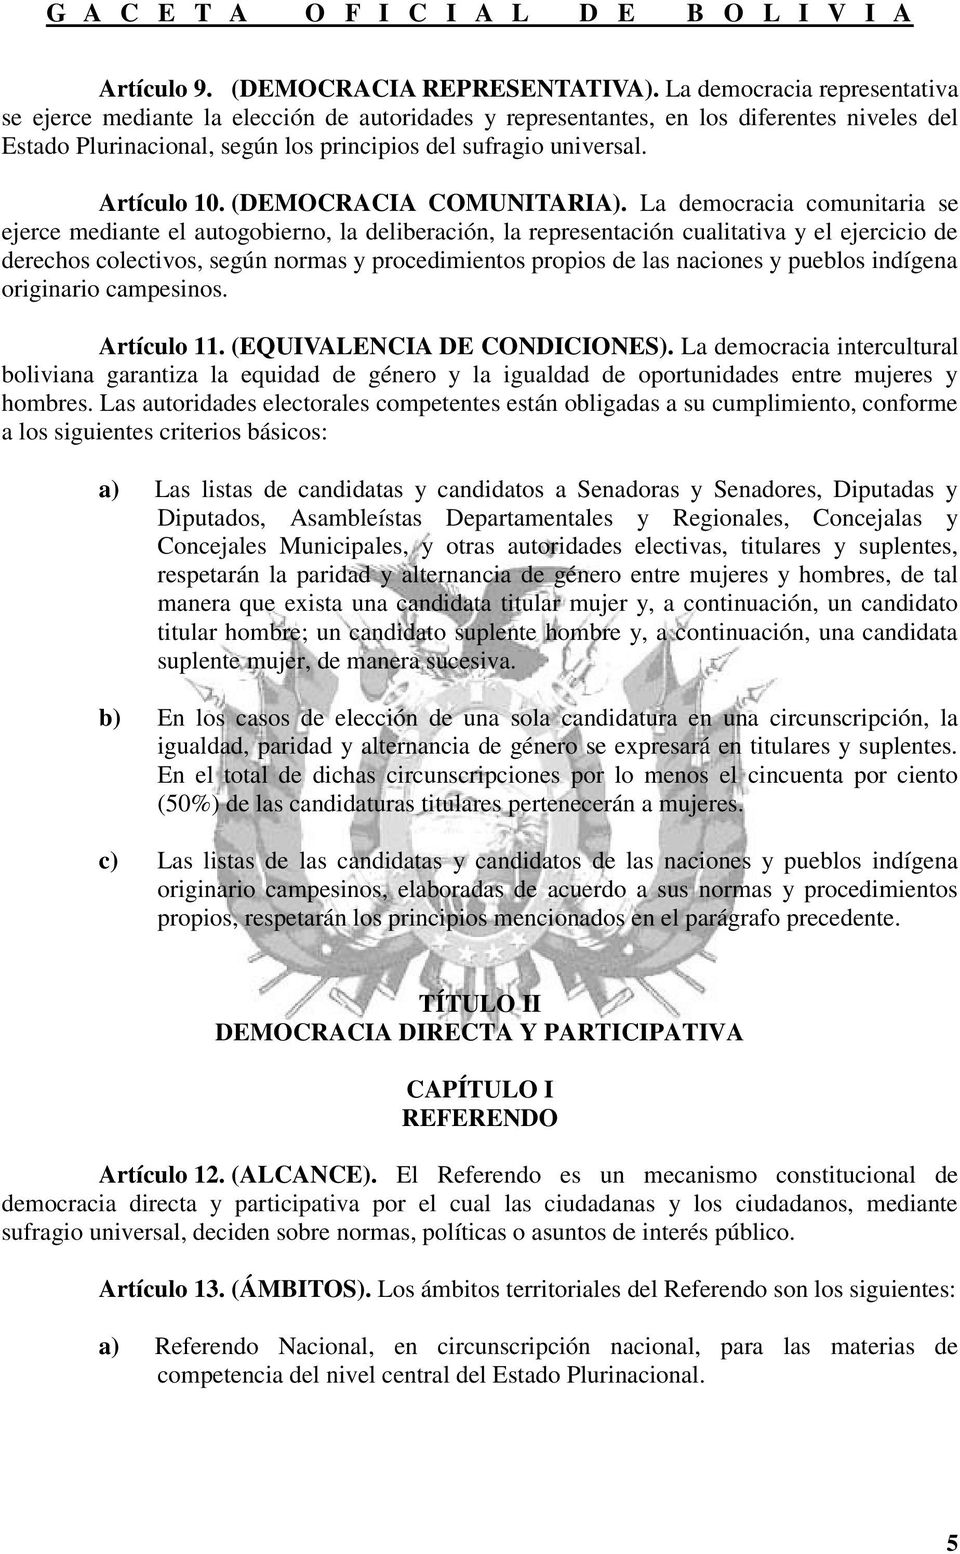 Artículo 10. (DEMOCRACIA COMUNITARIA).